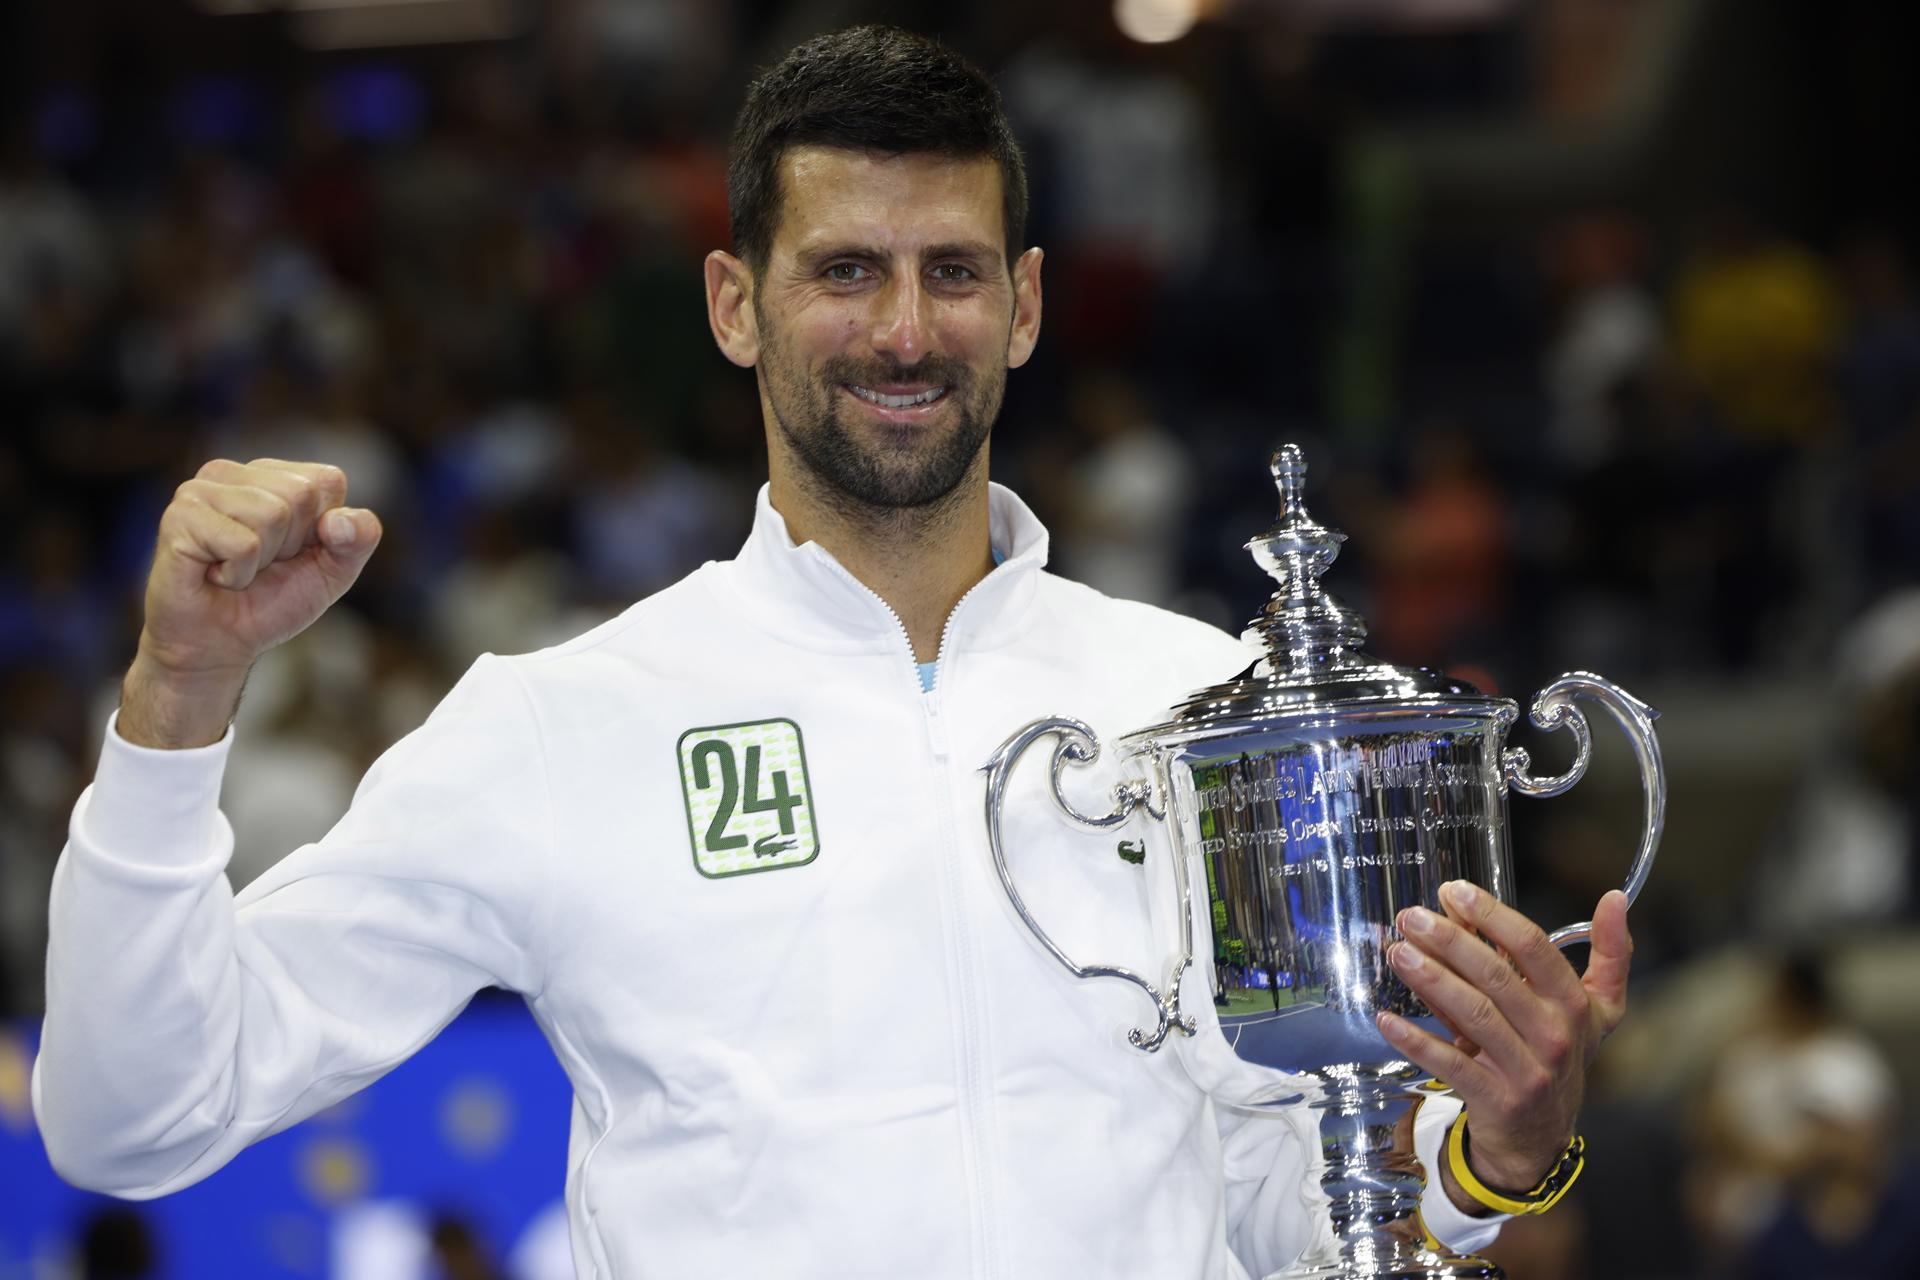 Djokovic reclama de exame antidoping pouco antes de jogo da Davis: "Não faz sentido"